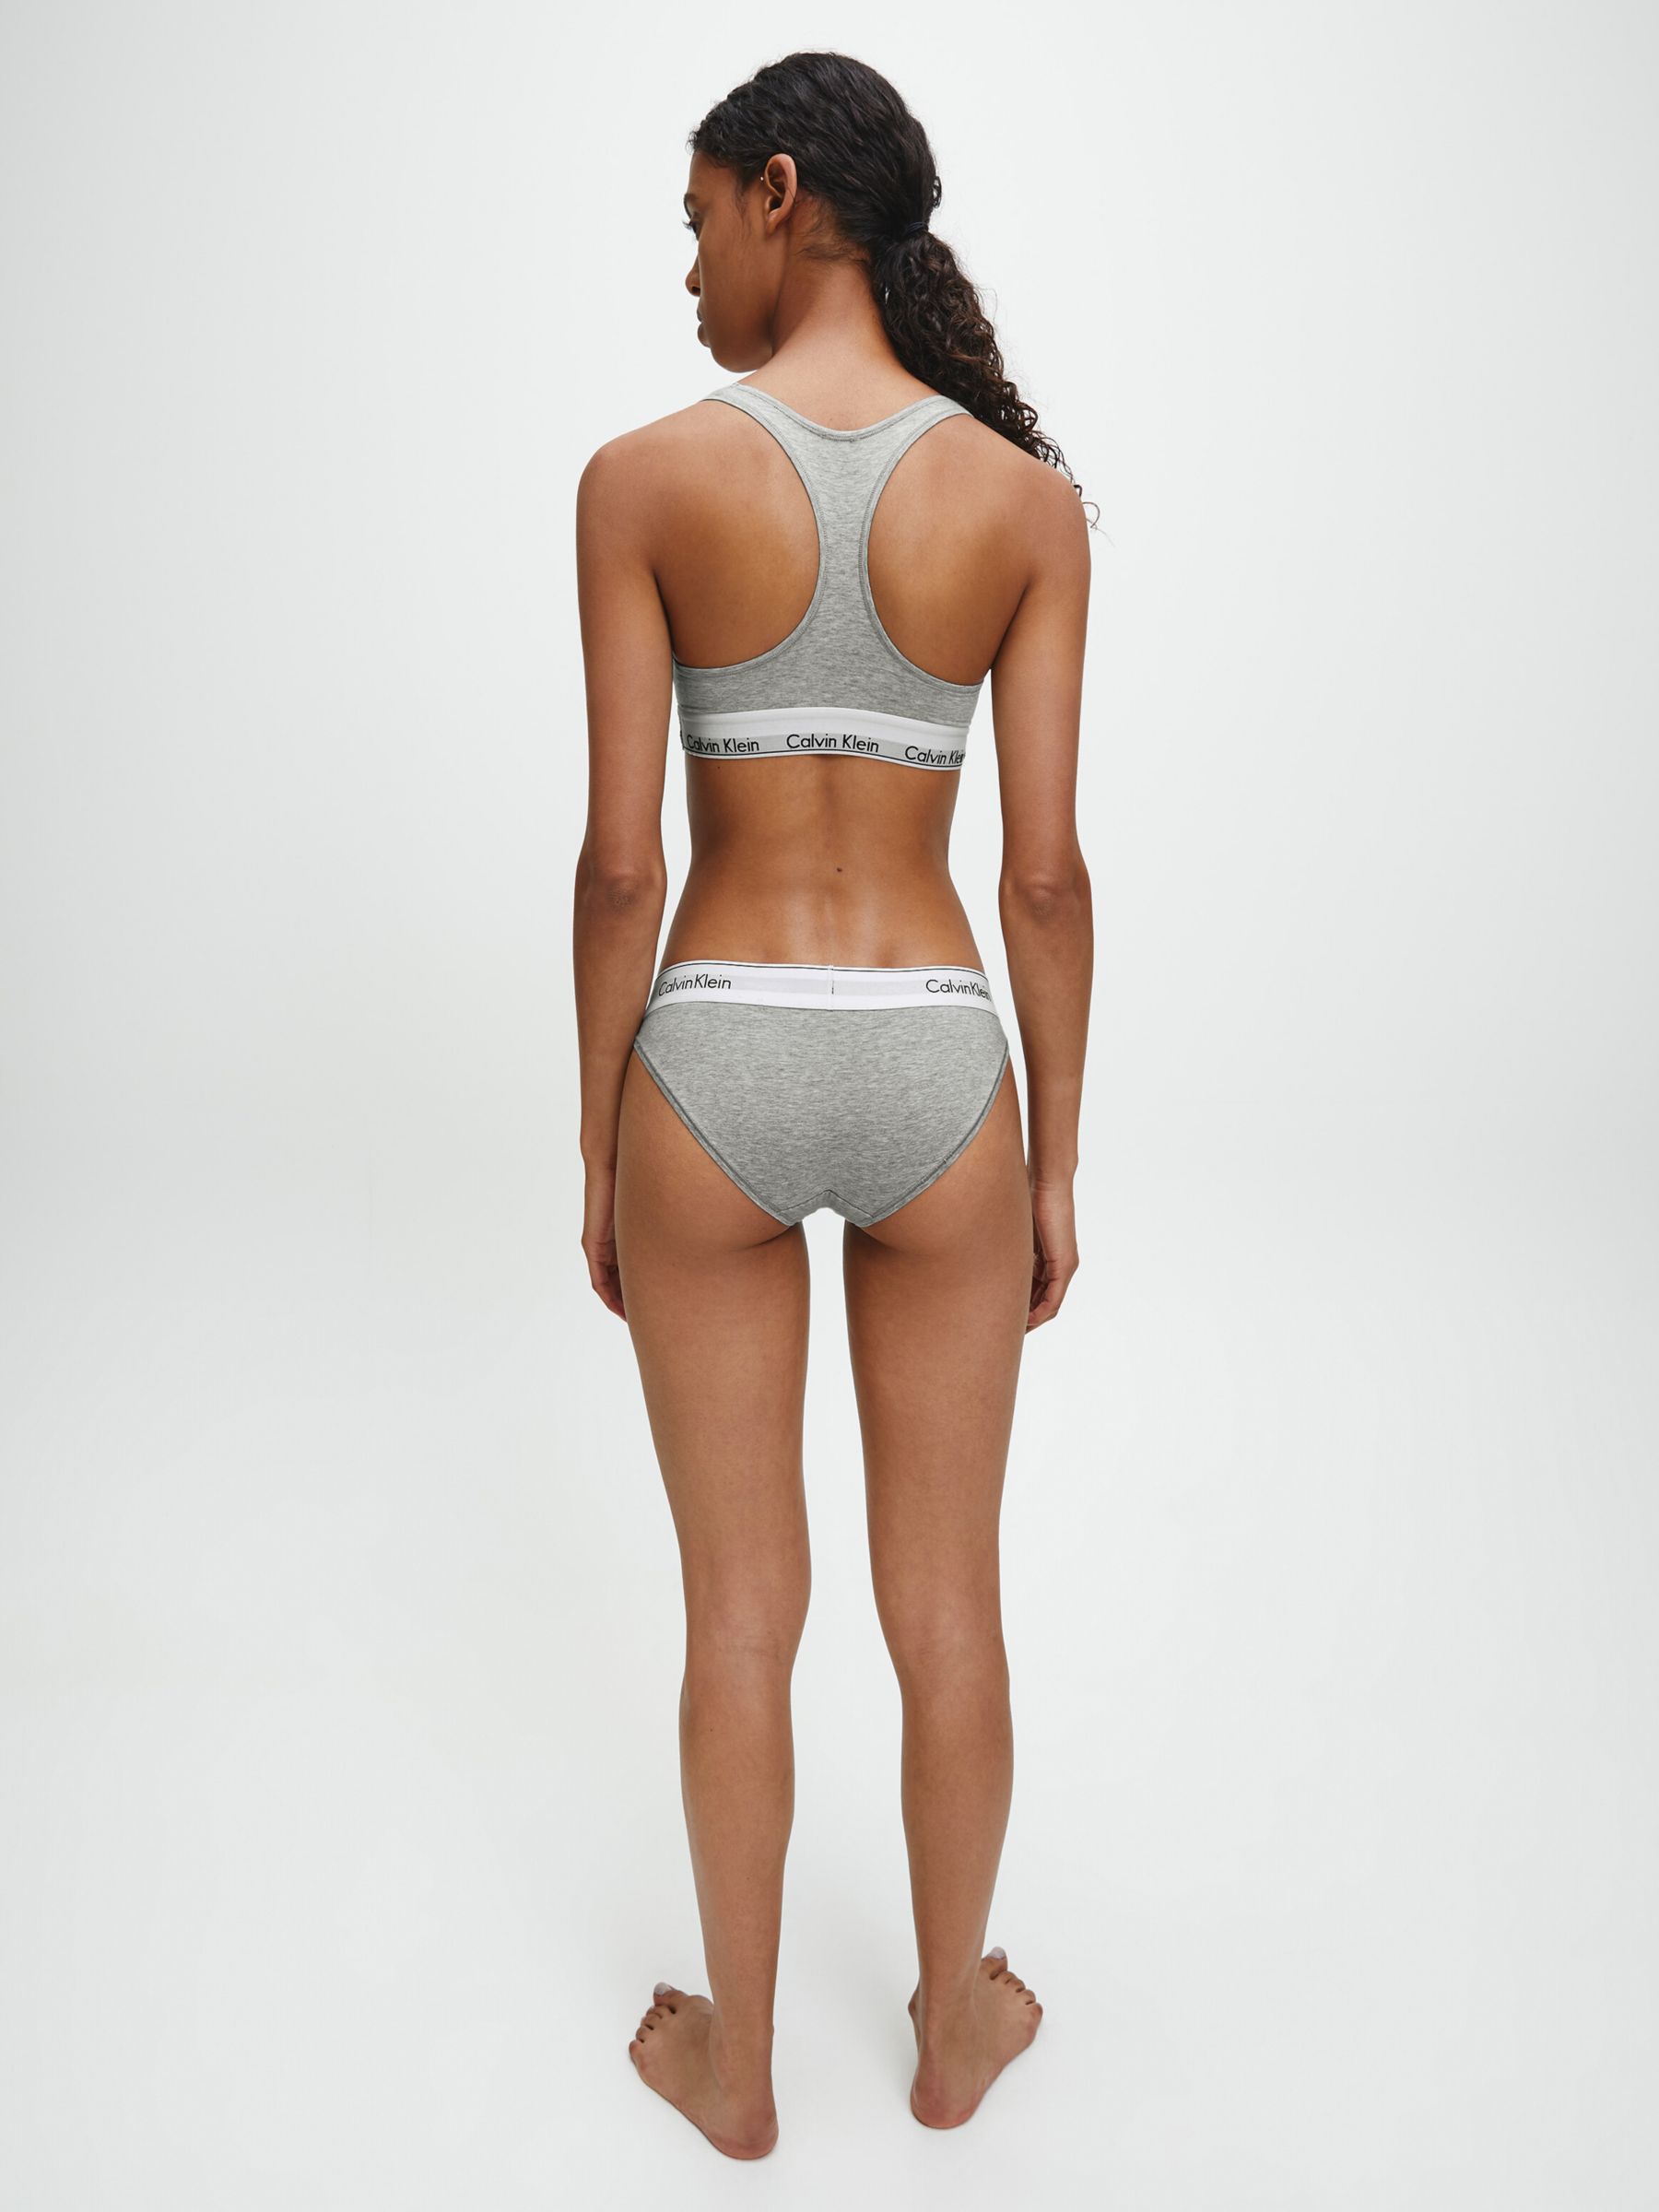 Calvin Klein Bra And Under Set Grey - Shop on Pinterest